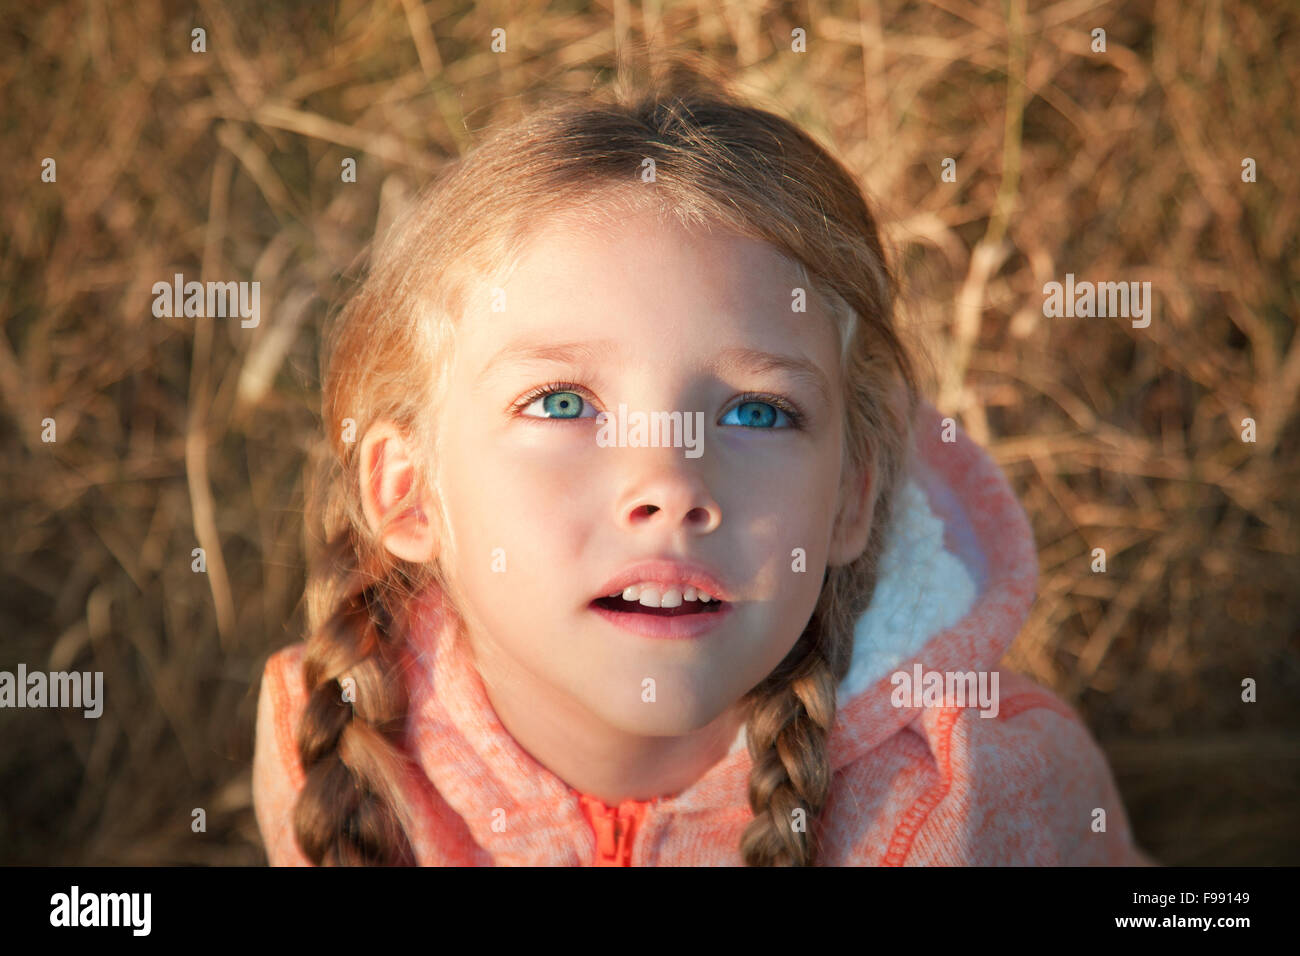 Portrait d'une petite fille aux yeux bleus et des tresses Banque D'Images